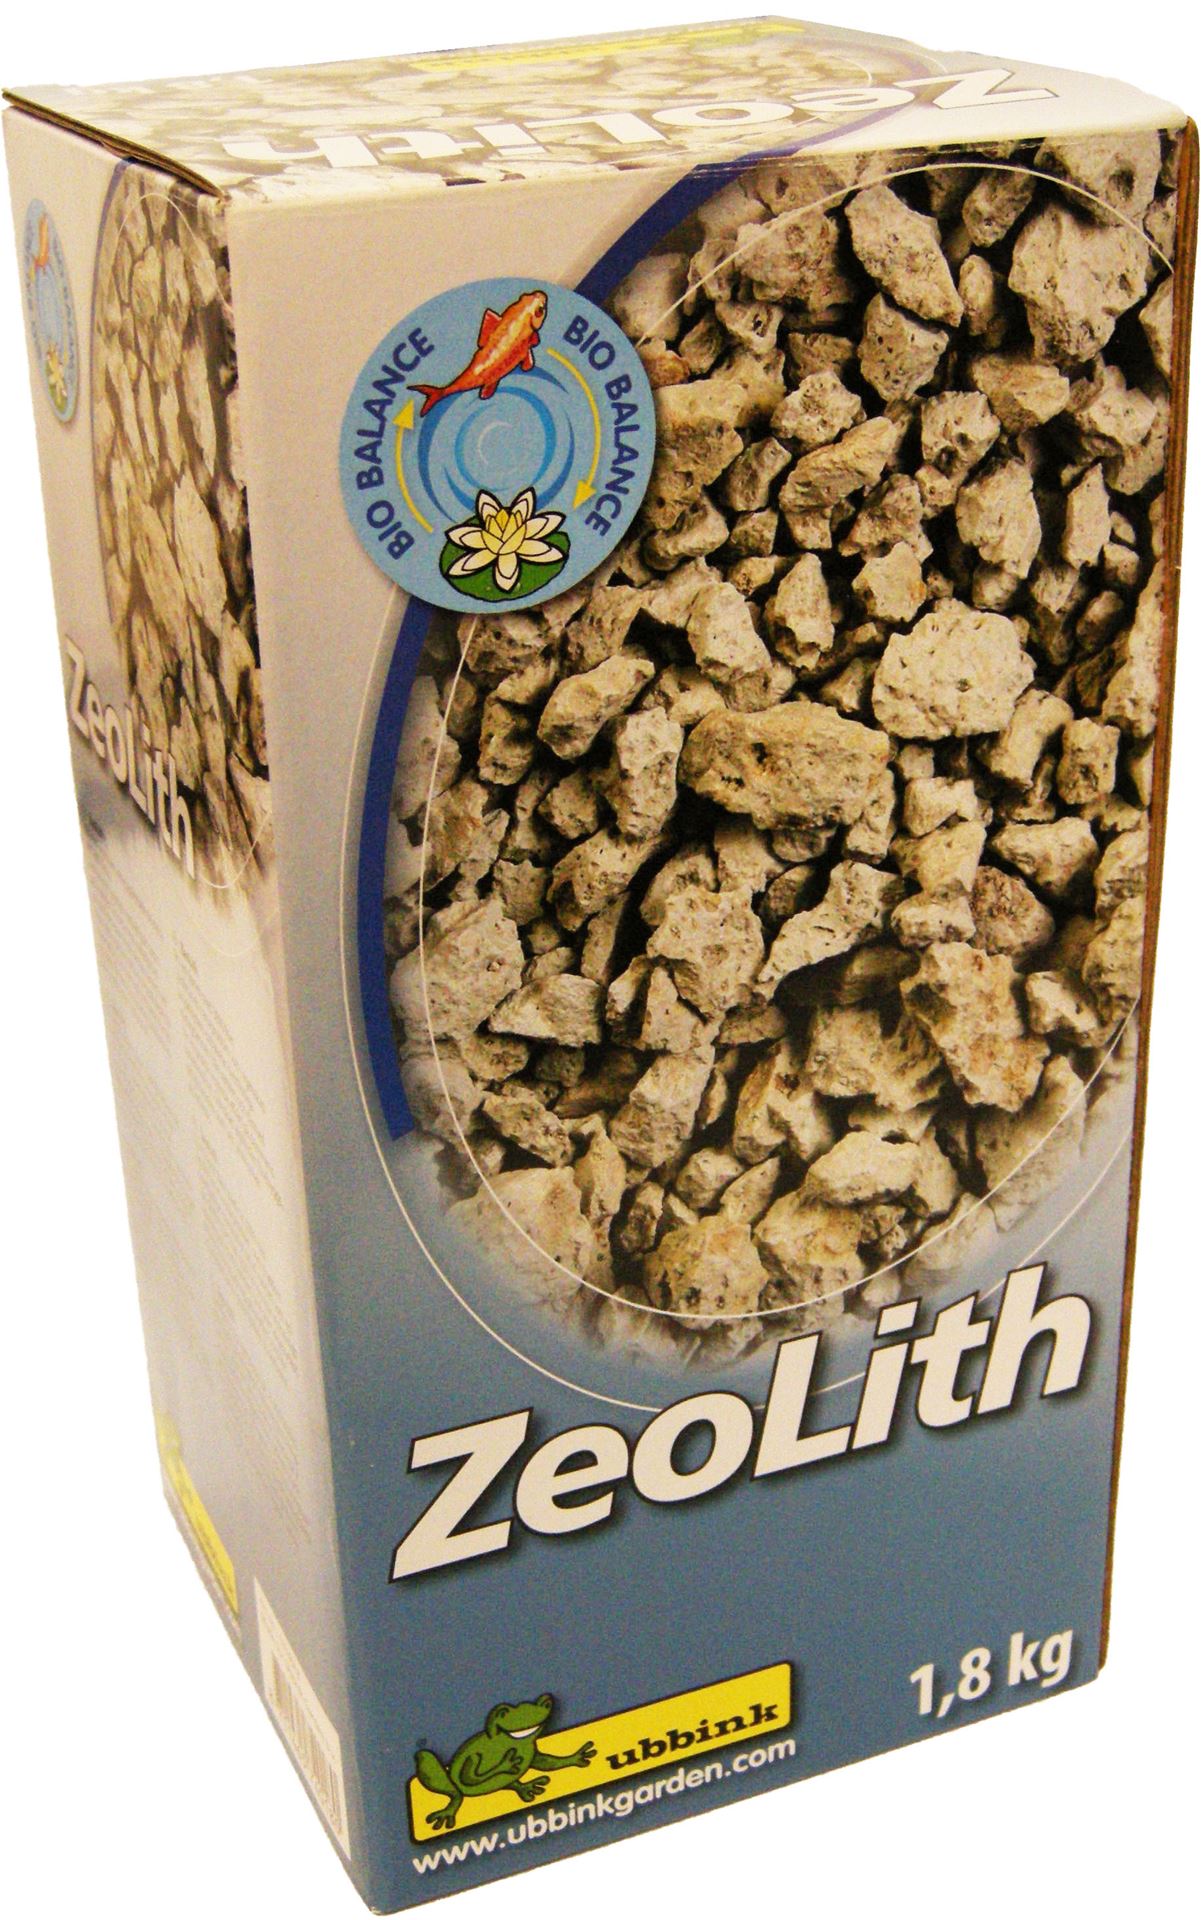 Zeolith-op-basis-van-zeoliet-zorgt-voor-helder-water-en-bindt-giftig-ammonium-en-zware-metalen-1-8-k